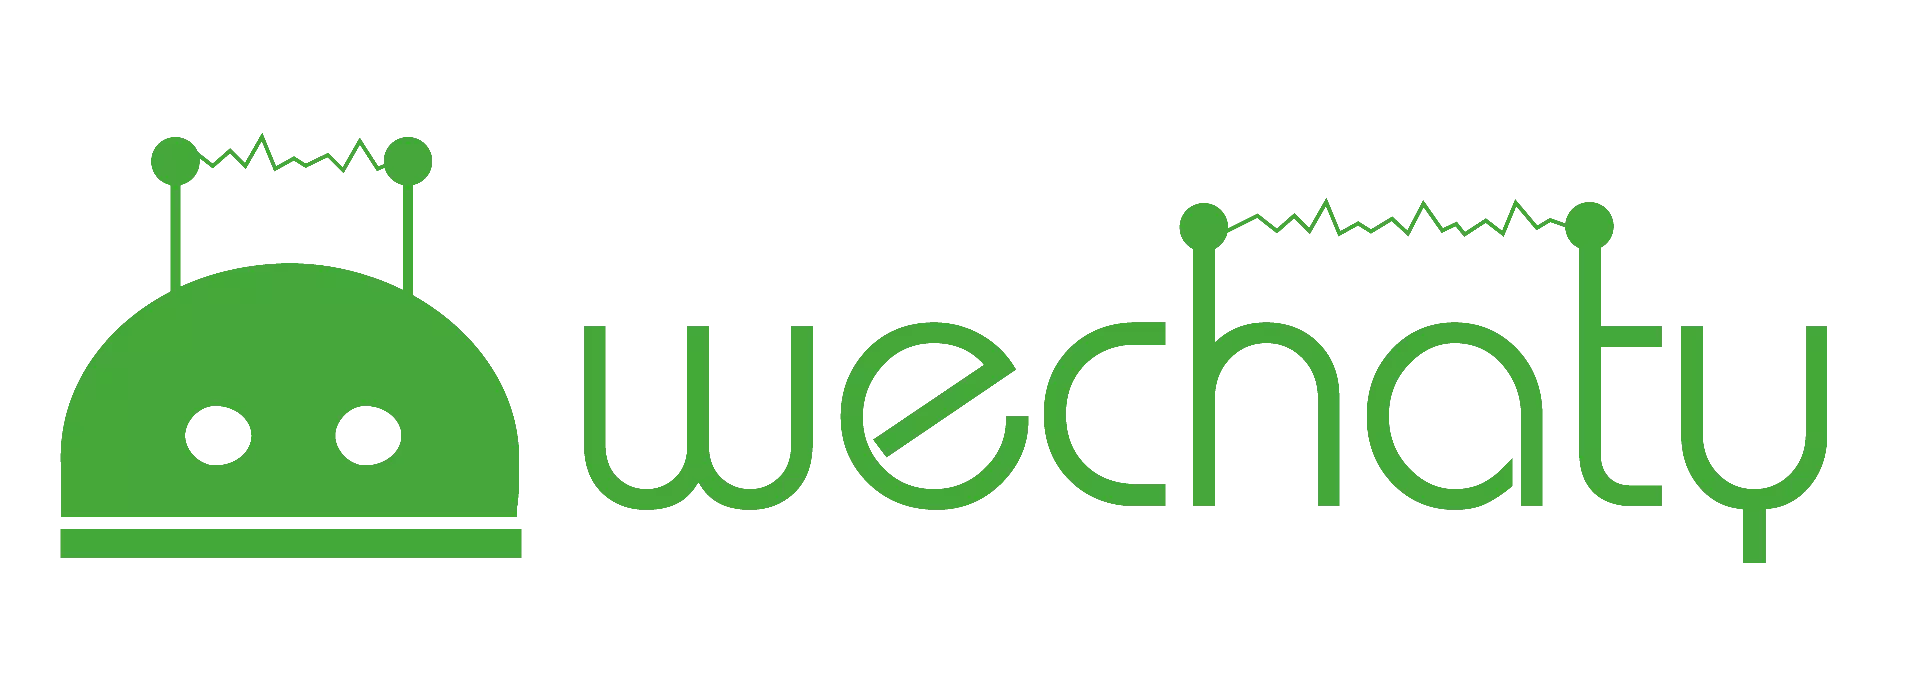 wechaty 基于 nodejs 原生 http 包的服务